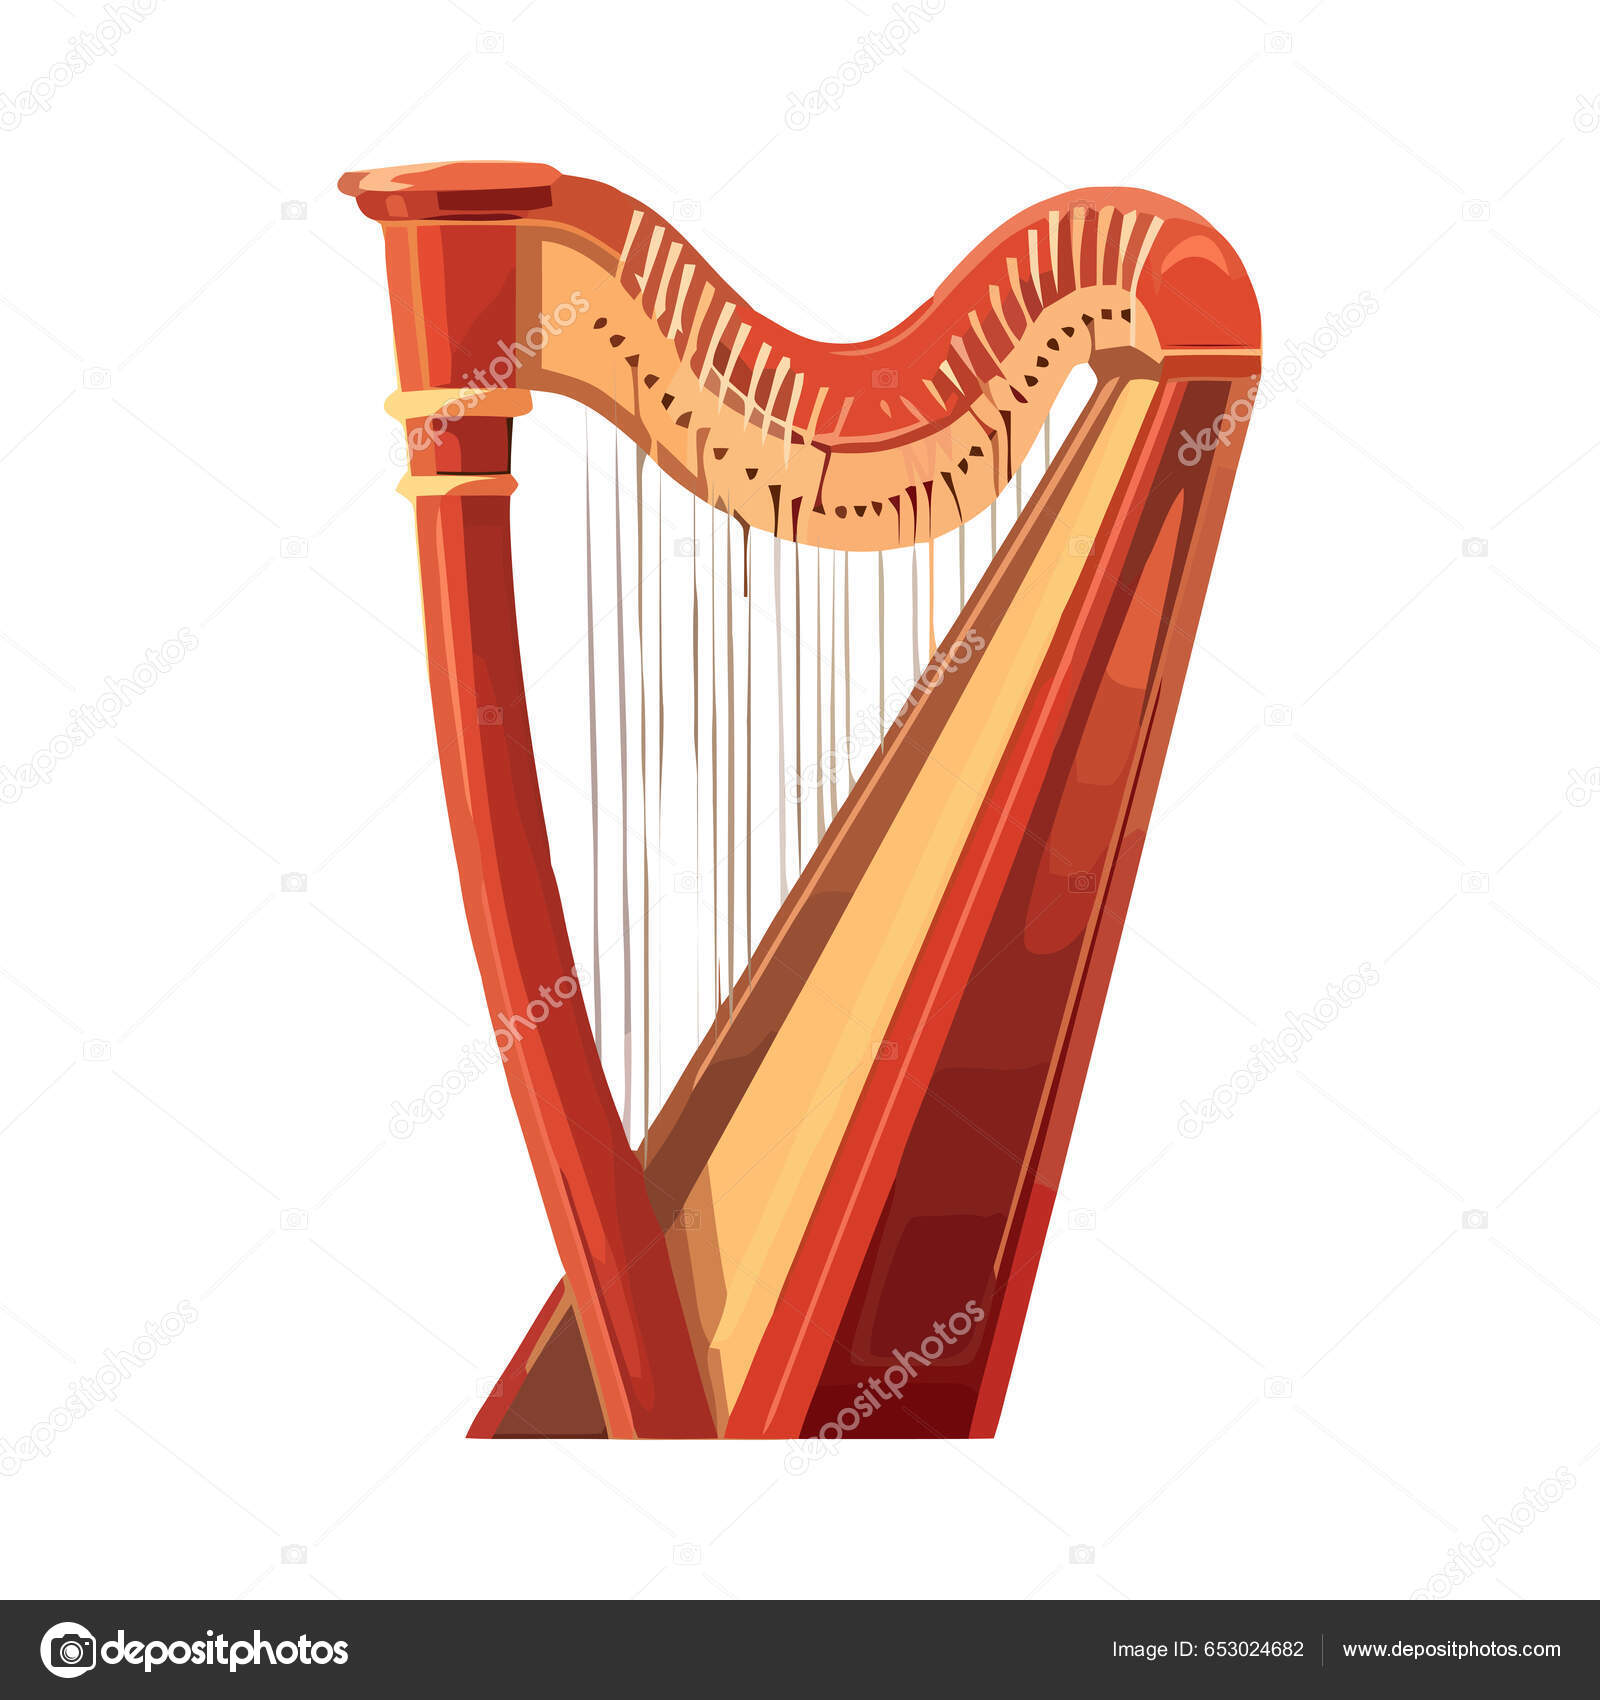 Harp coloring images vectorielles, Harp coloring vecteurs libres de droits  | Depositphotos